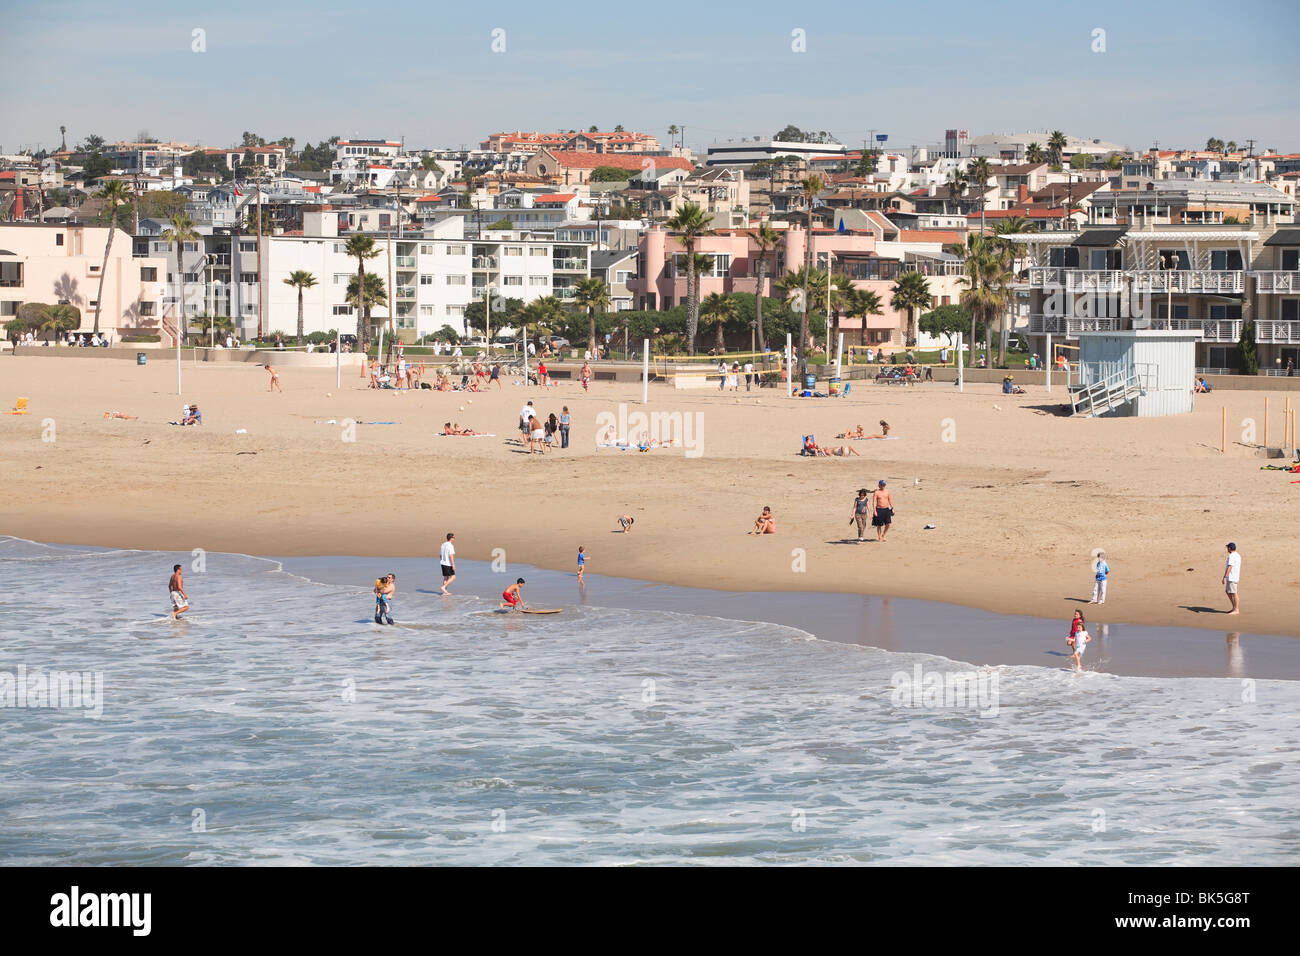 Hermosa Beach, Los Angeles, California, Vereinigte Staaten von Amerika, Nordamerika Stockfoto